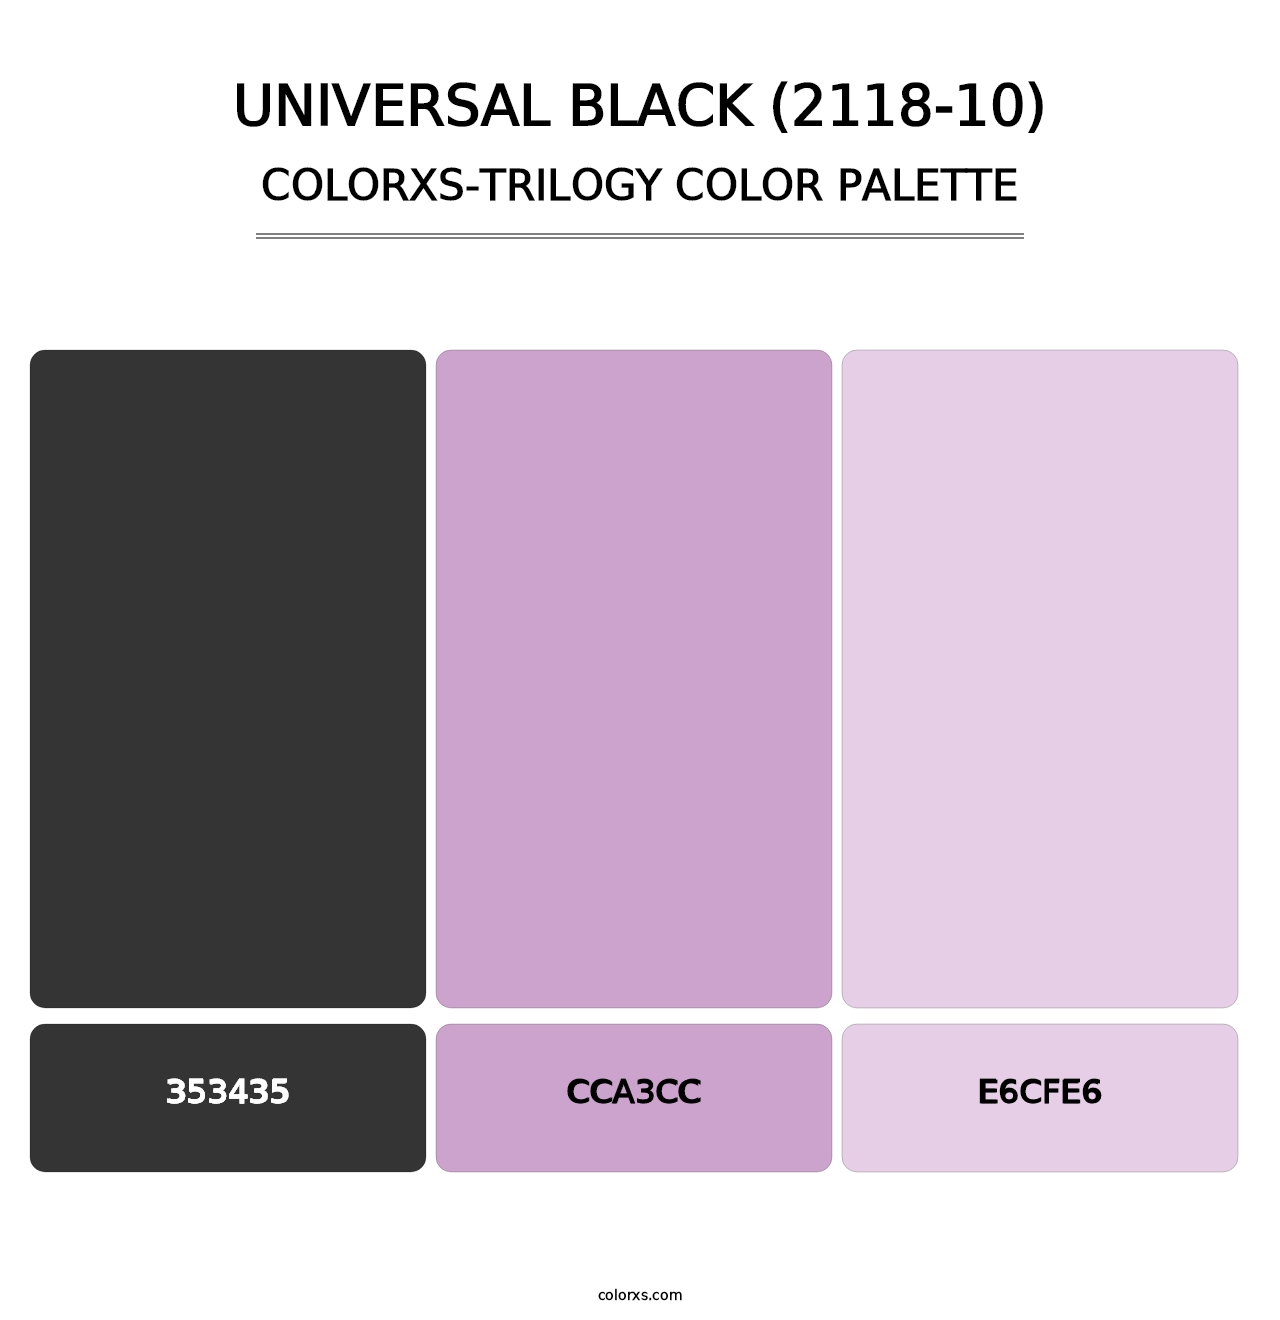 Universal Black (2118-10) - Colorxs Trilogy Palette